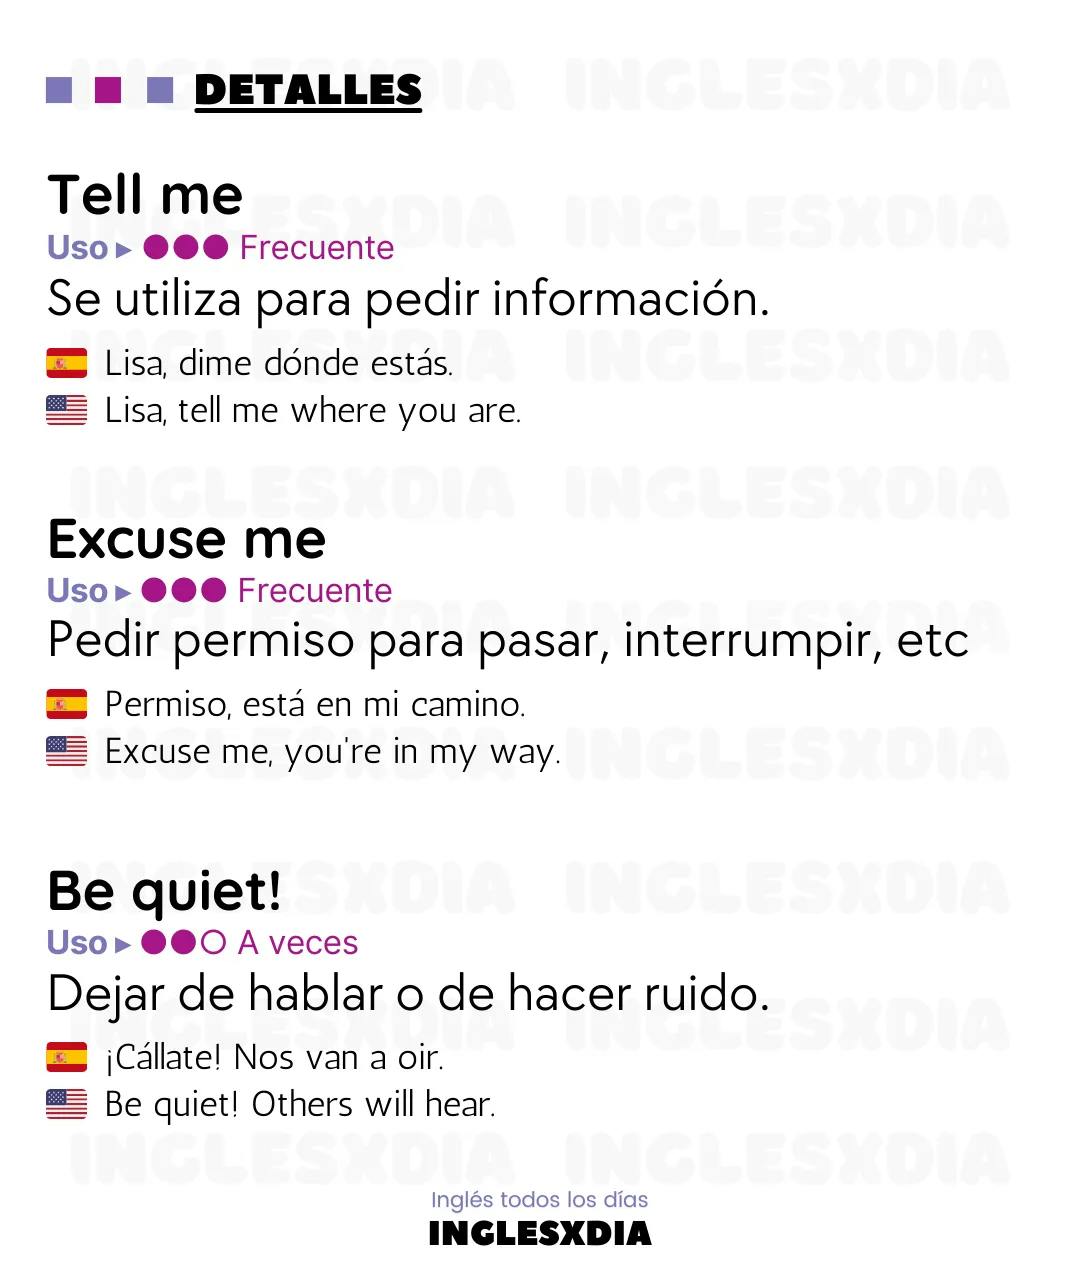 Curso de inglés en línea: frases en inglés y español cortas · Maybe, let's go...